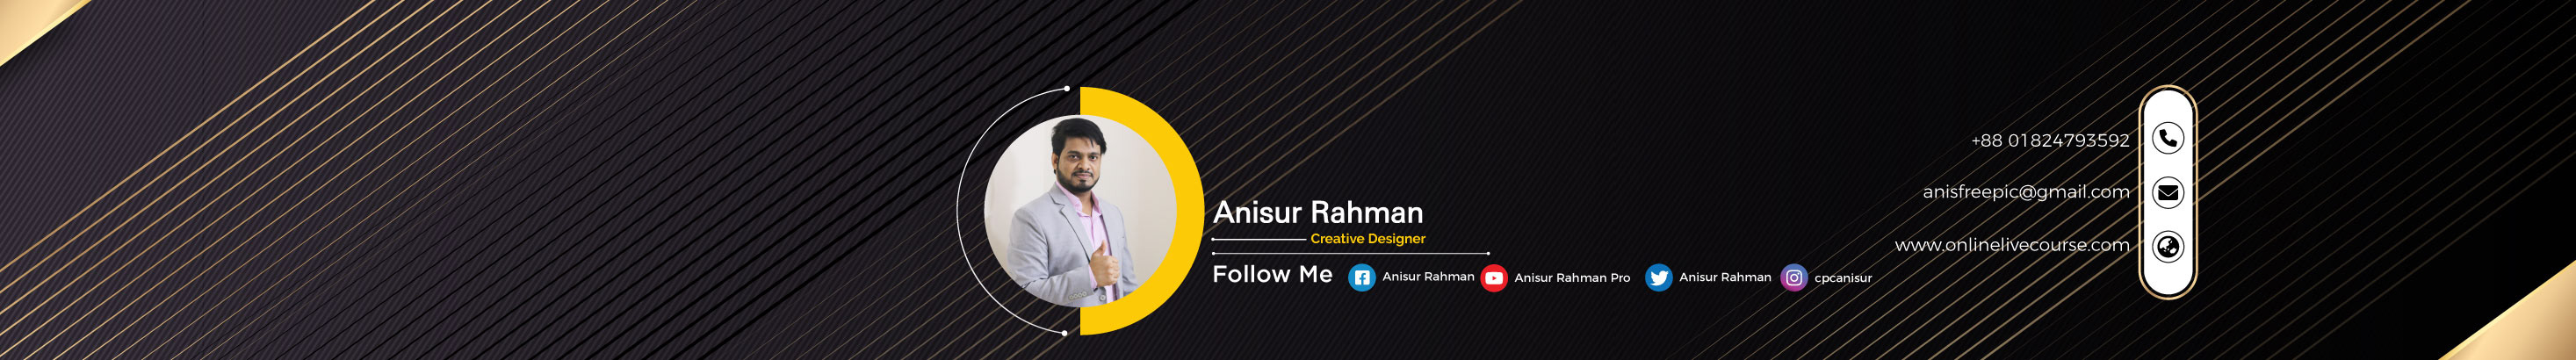 Profielbanner van Anisur Rahman